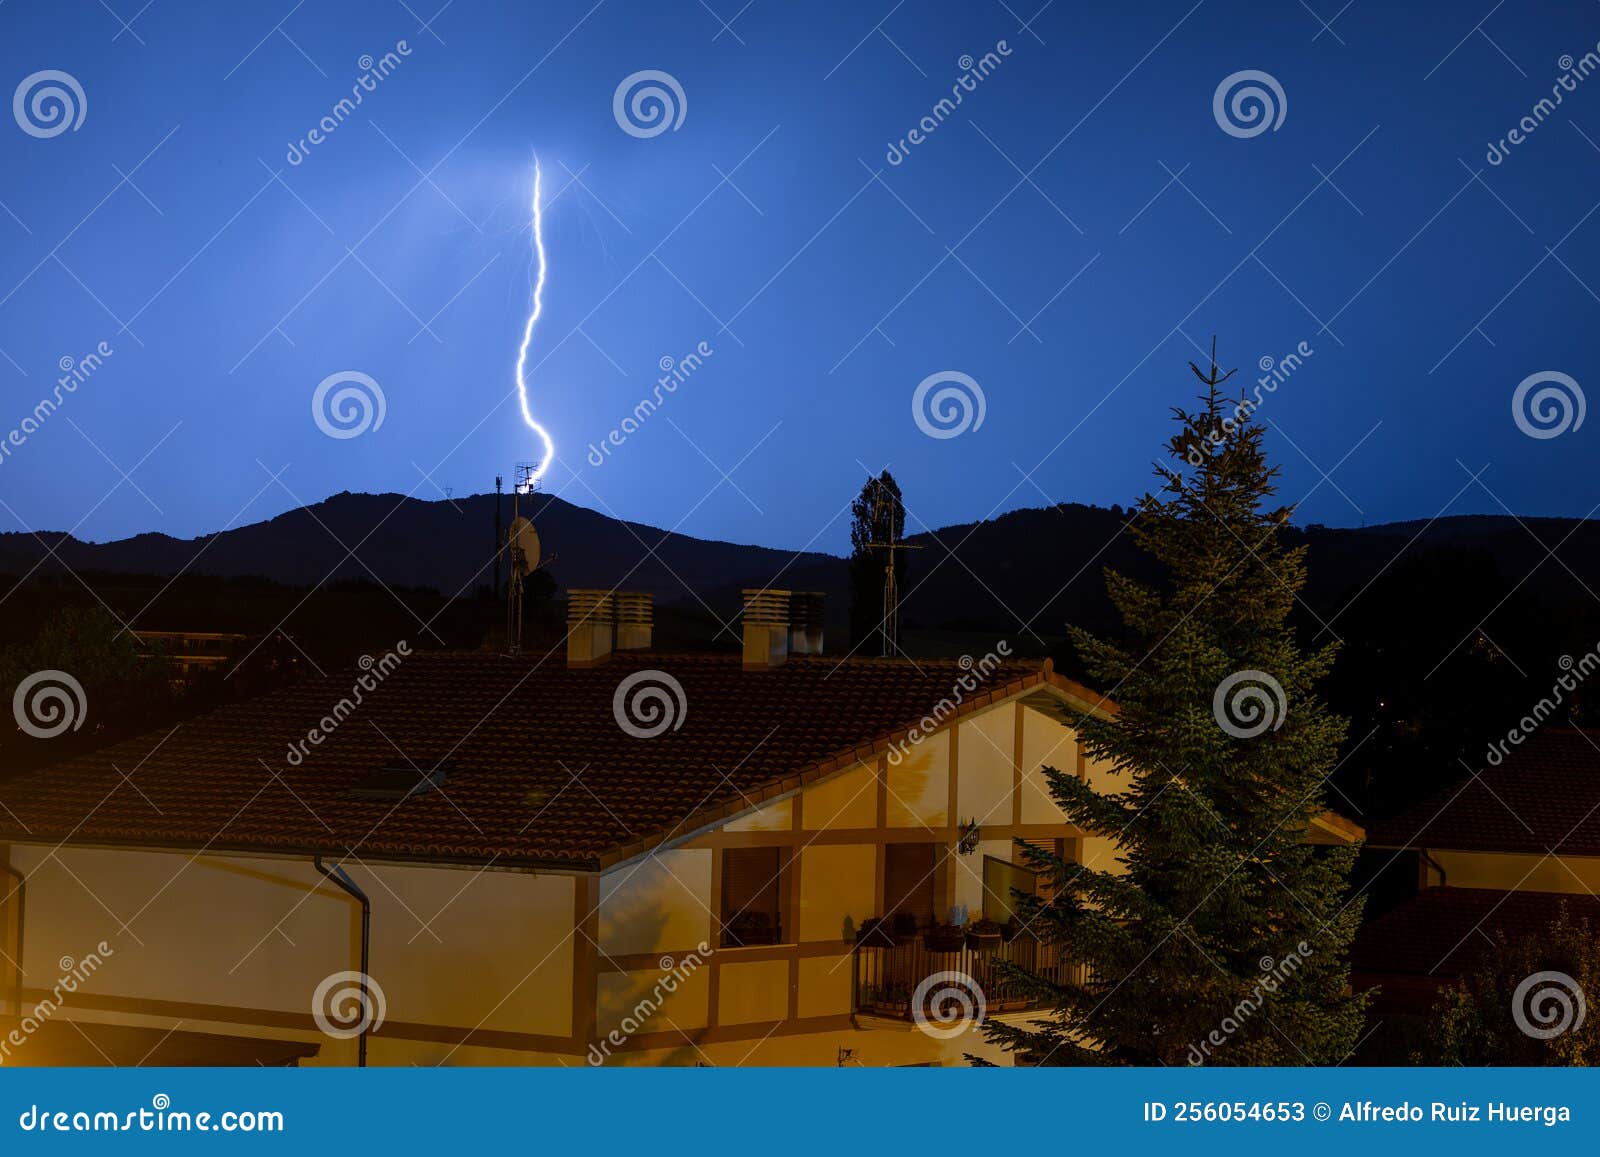 lightning at night at espejo, alava, spain